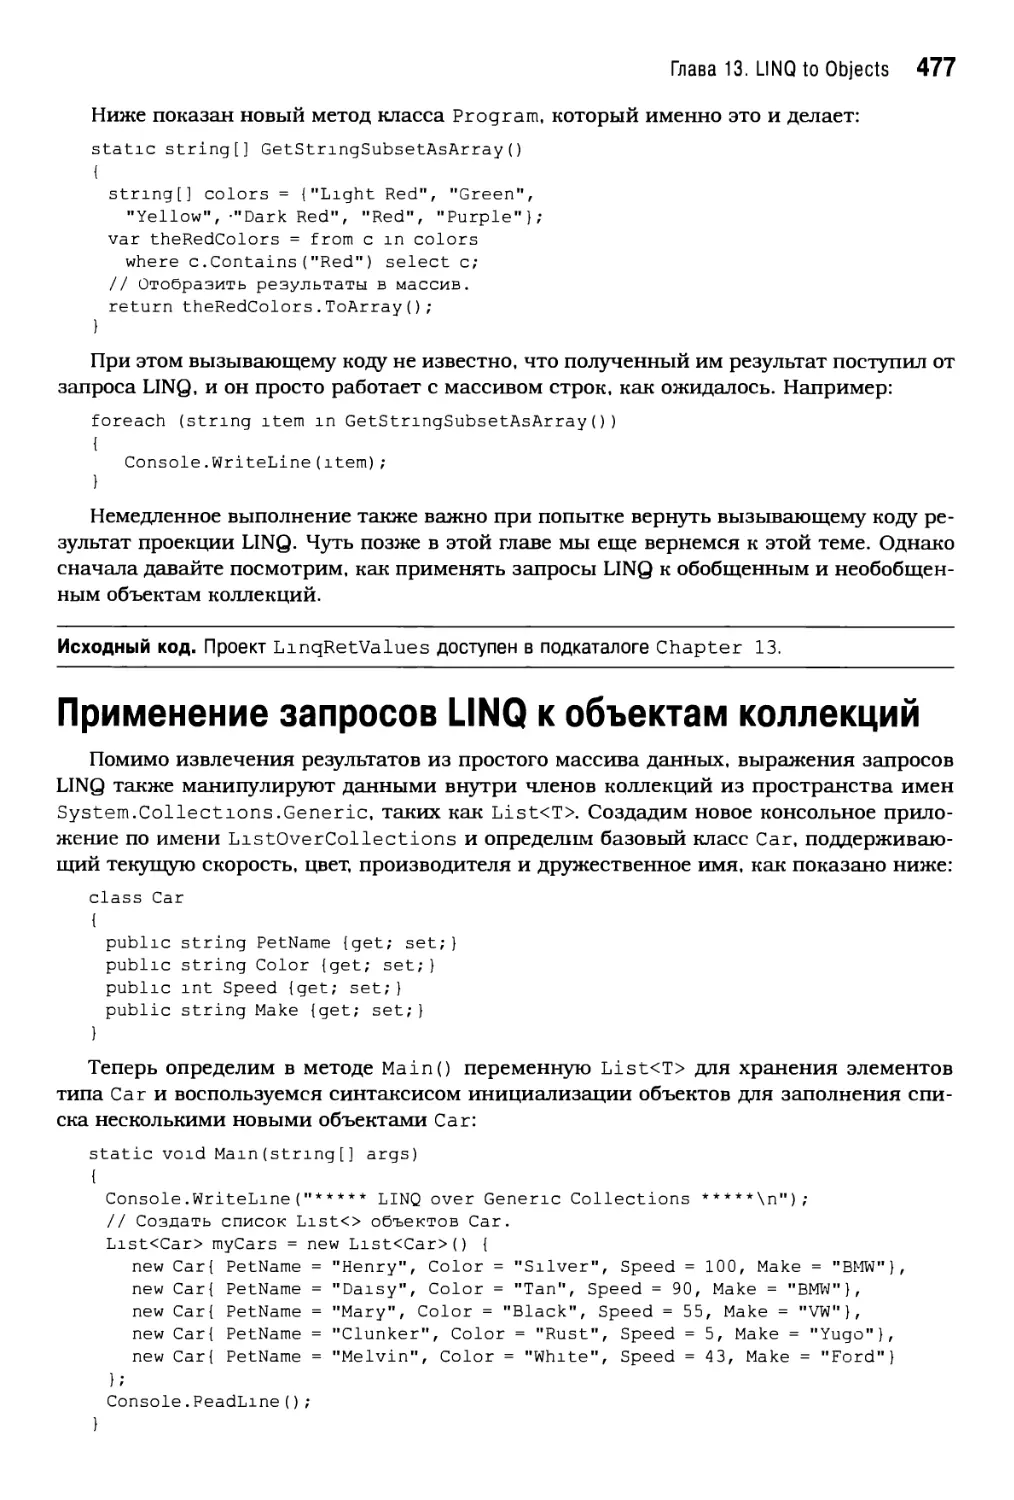 Применение запросов LINQ к объектам коллекций